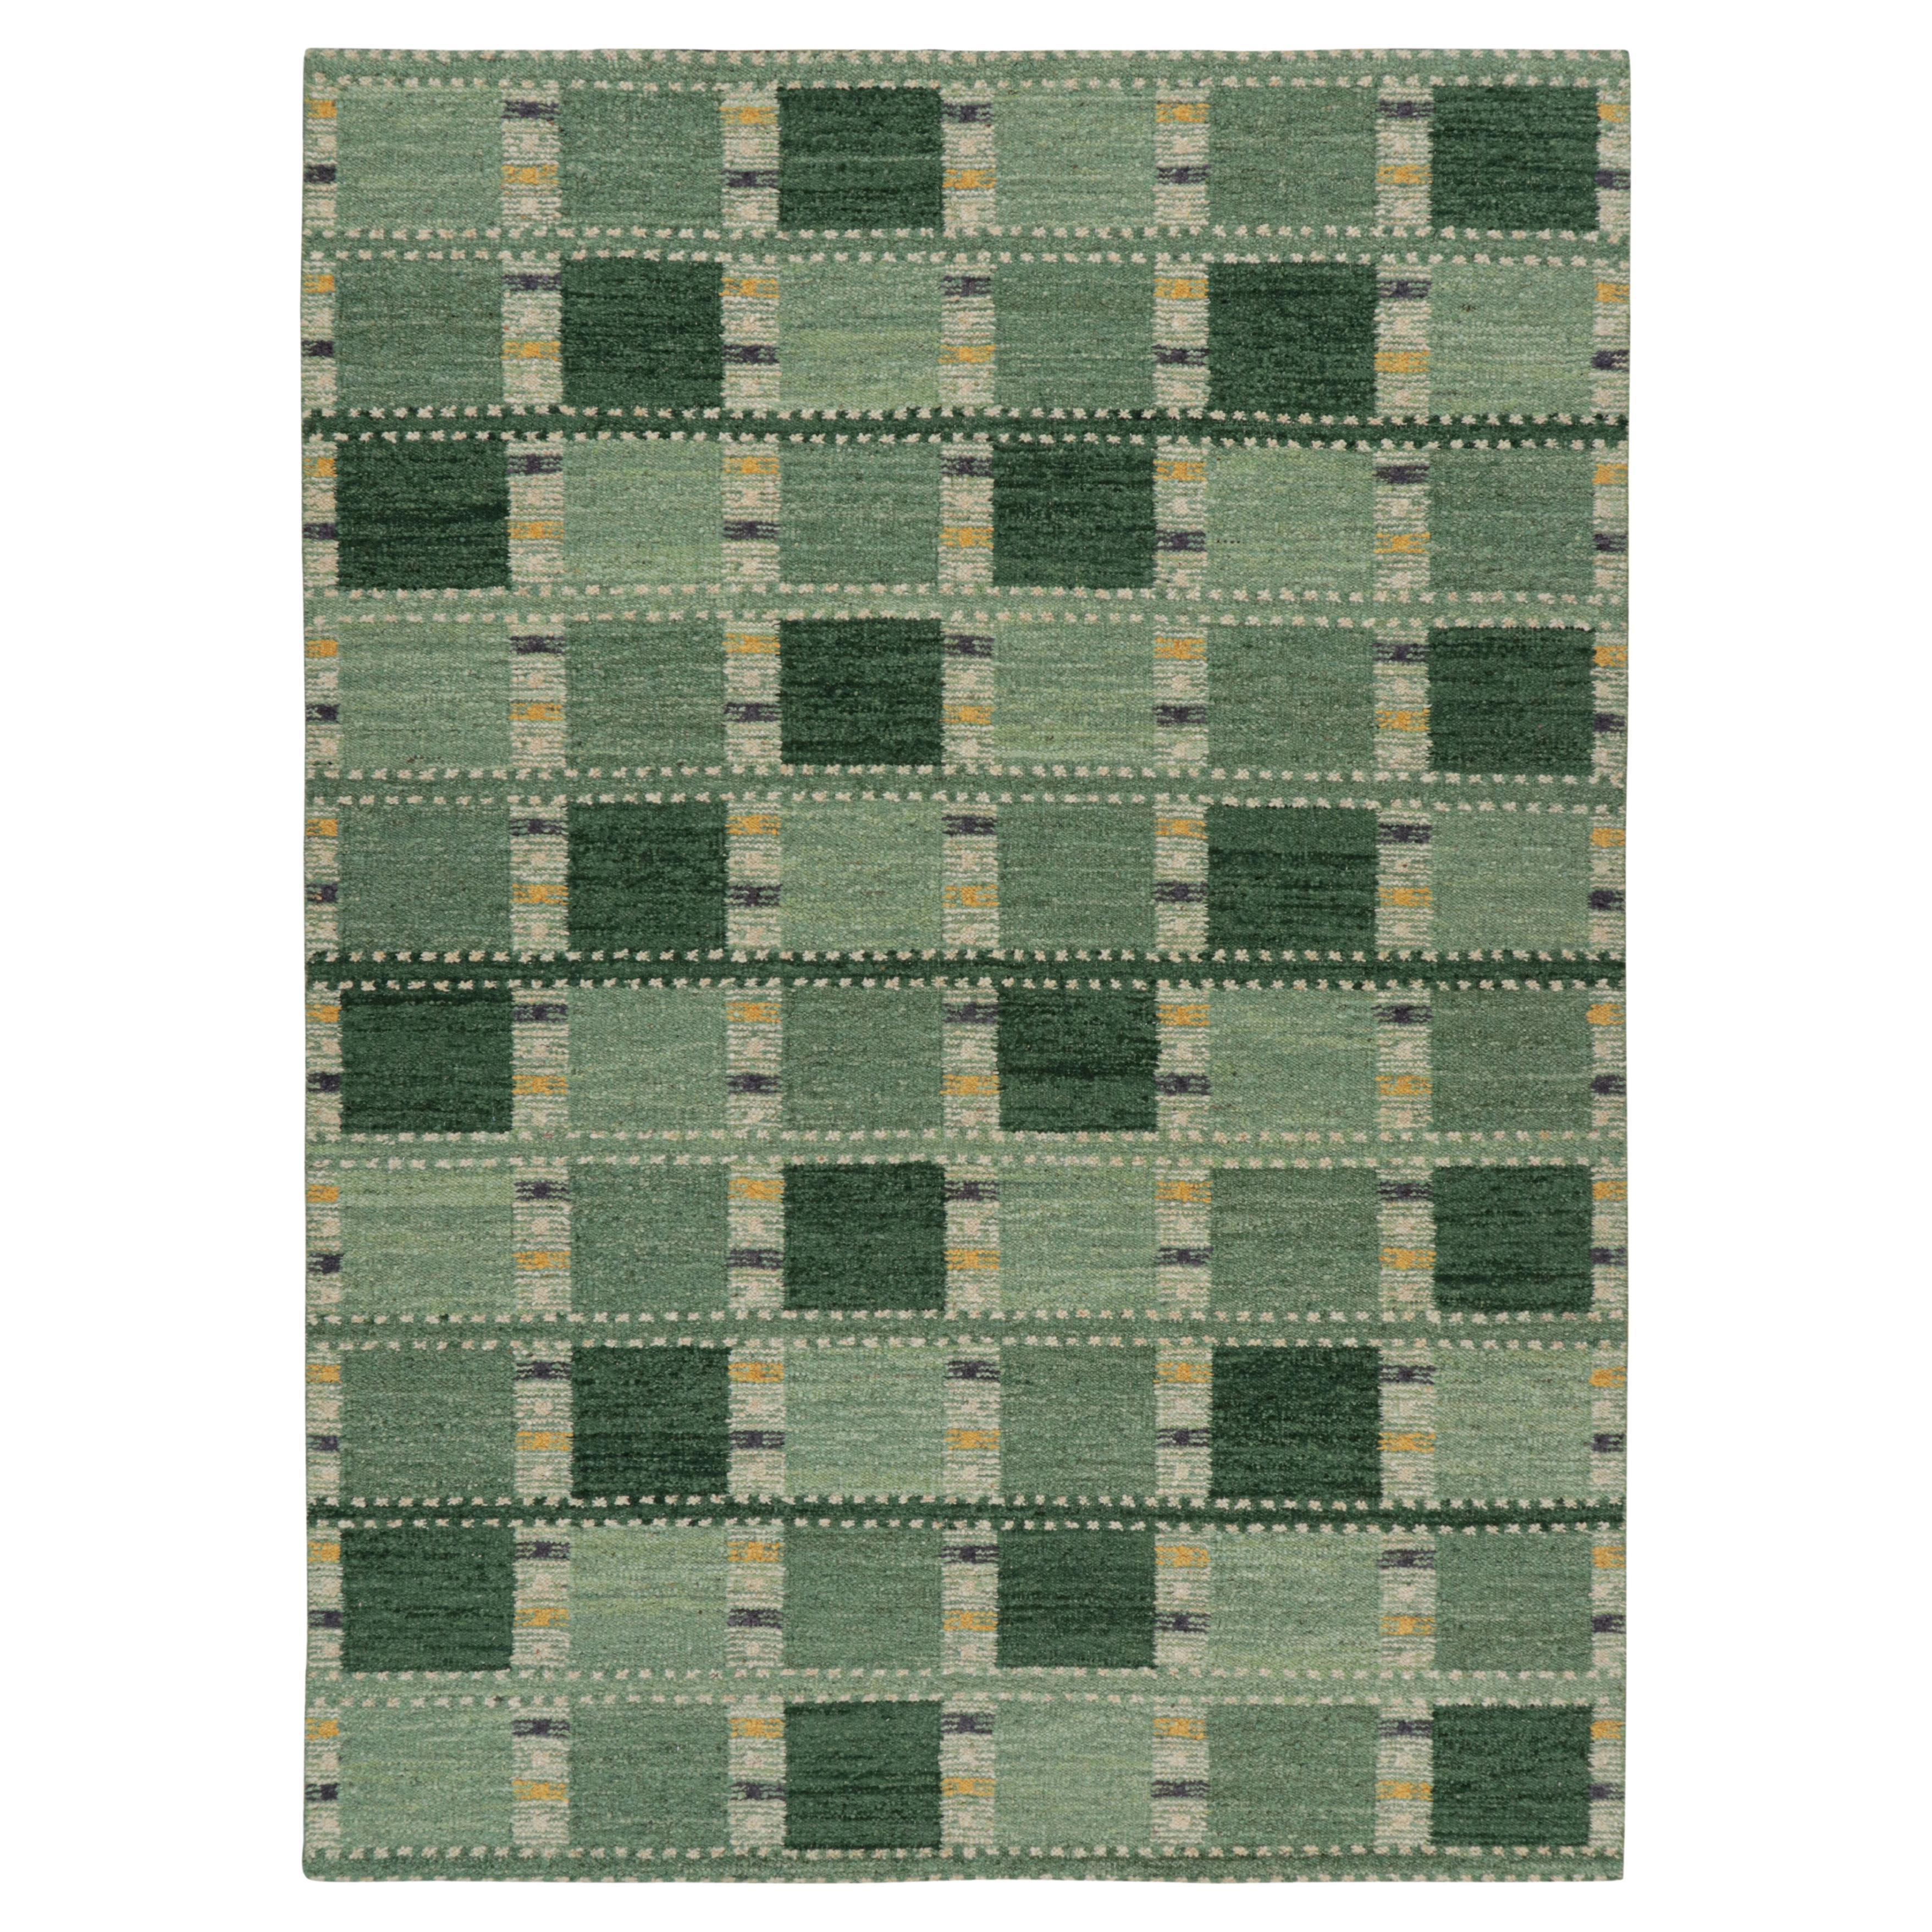 Tapis de style scandinave de Rug & Kilim dans les tons verts, avec des motifs géométriques